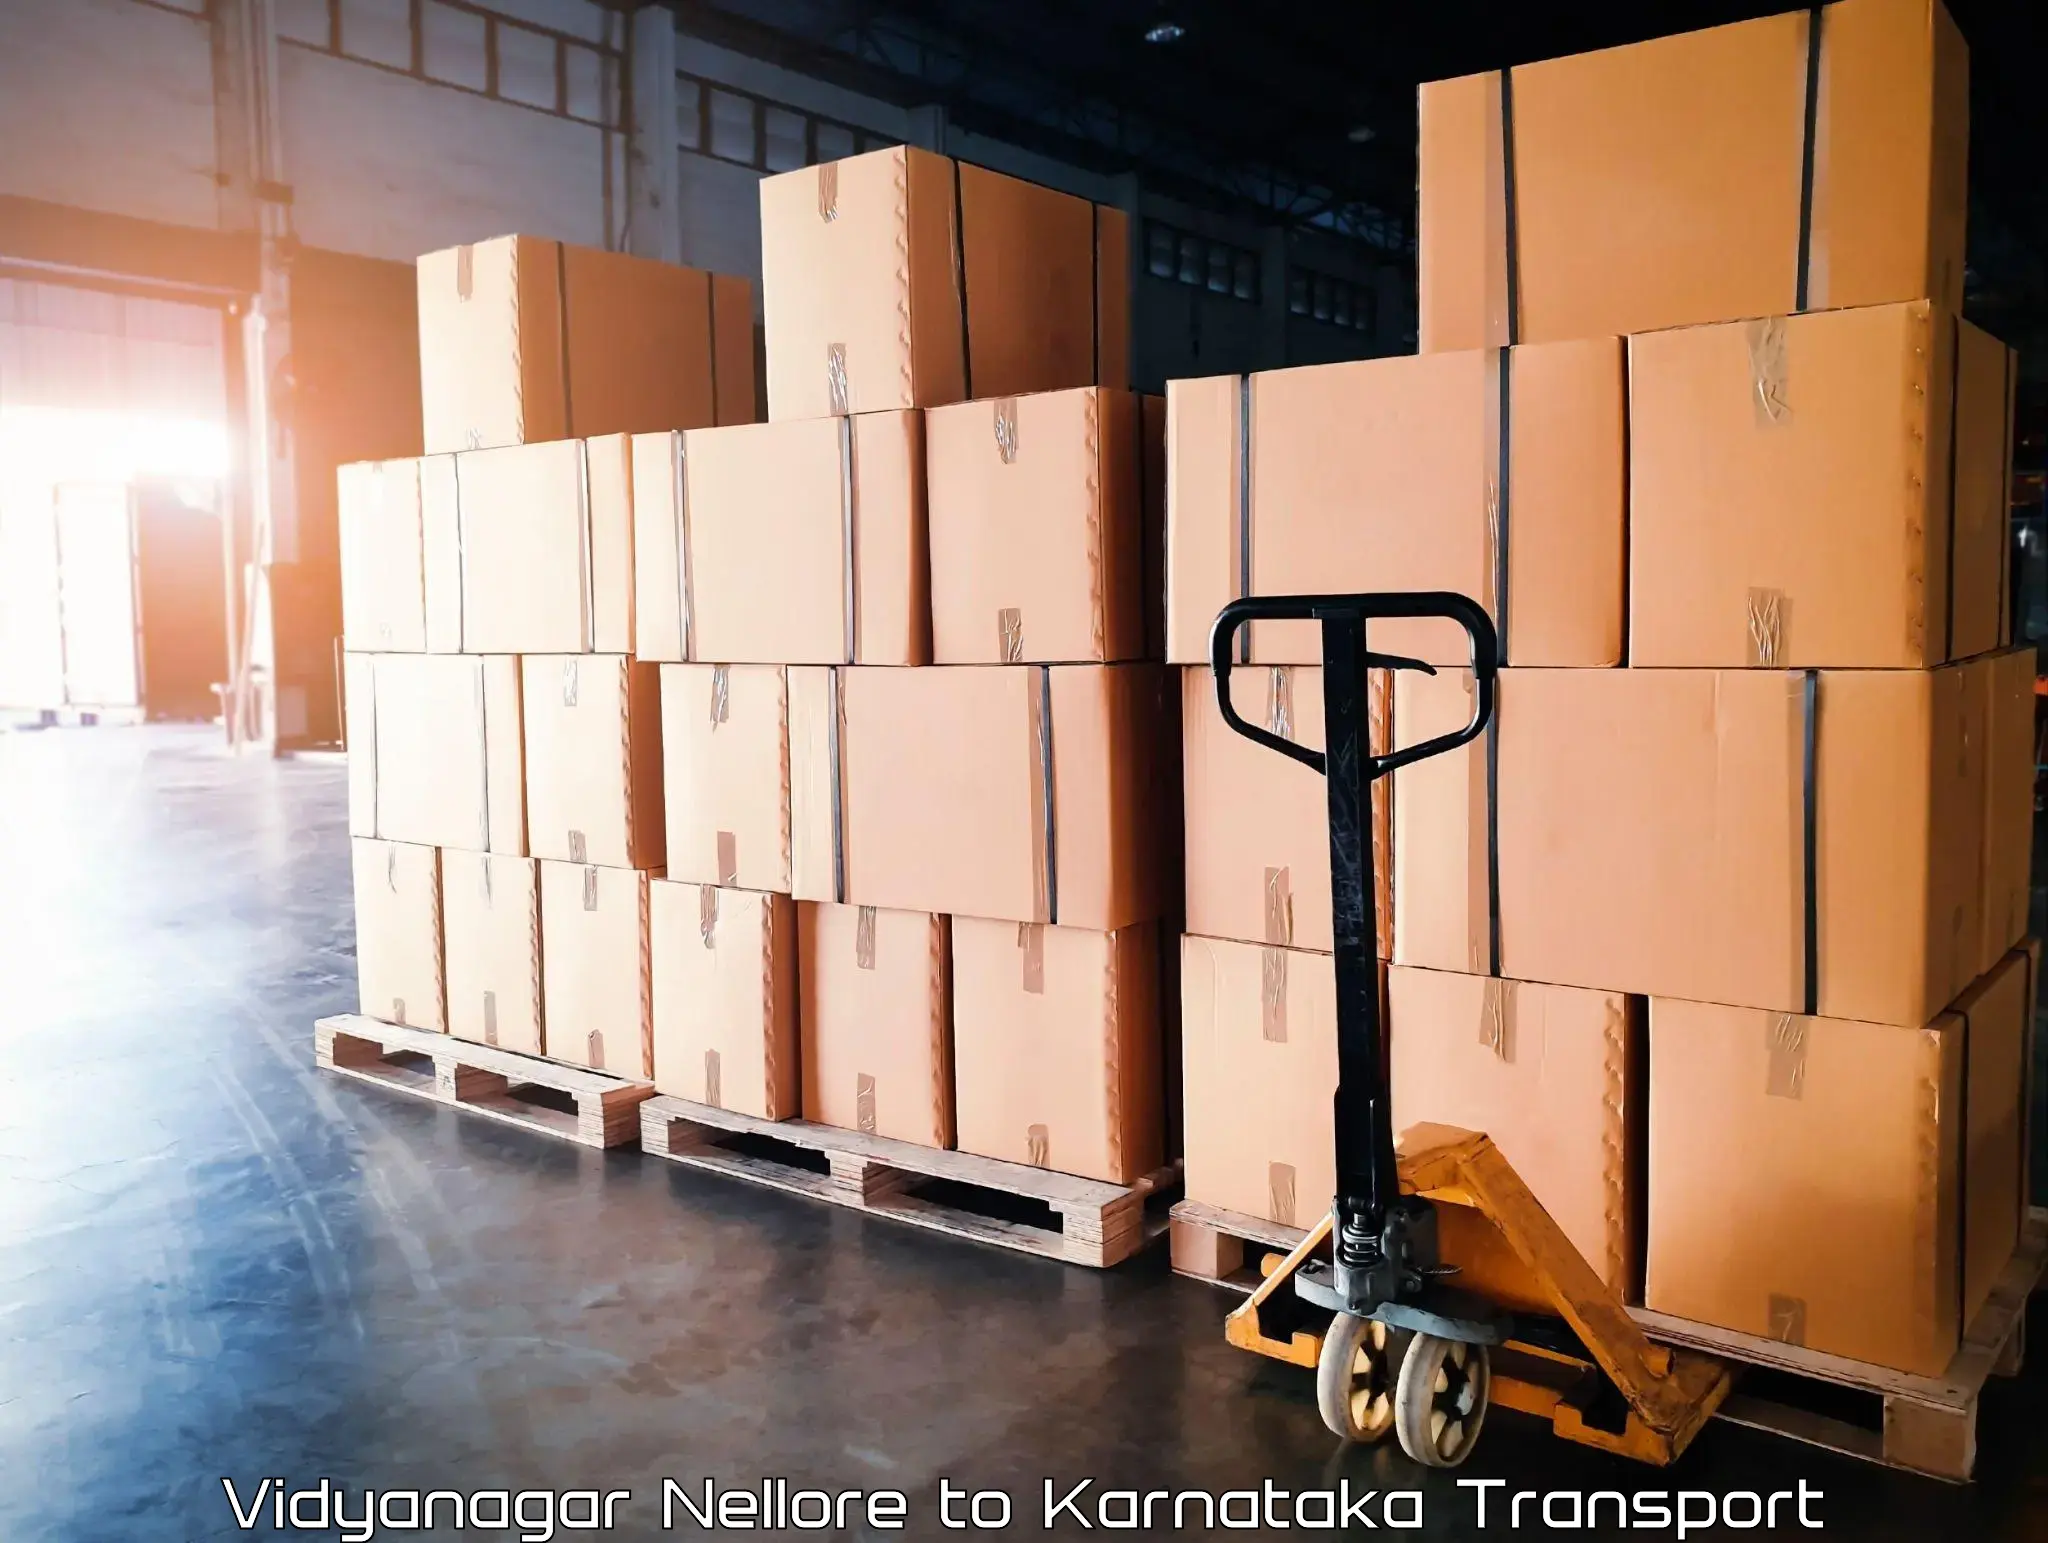 Container transport service Vidyanagar Nellore to Channagiri